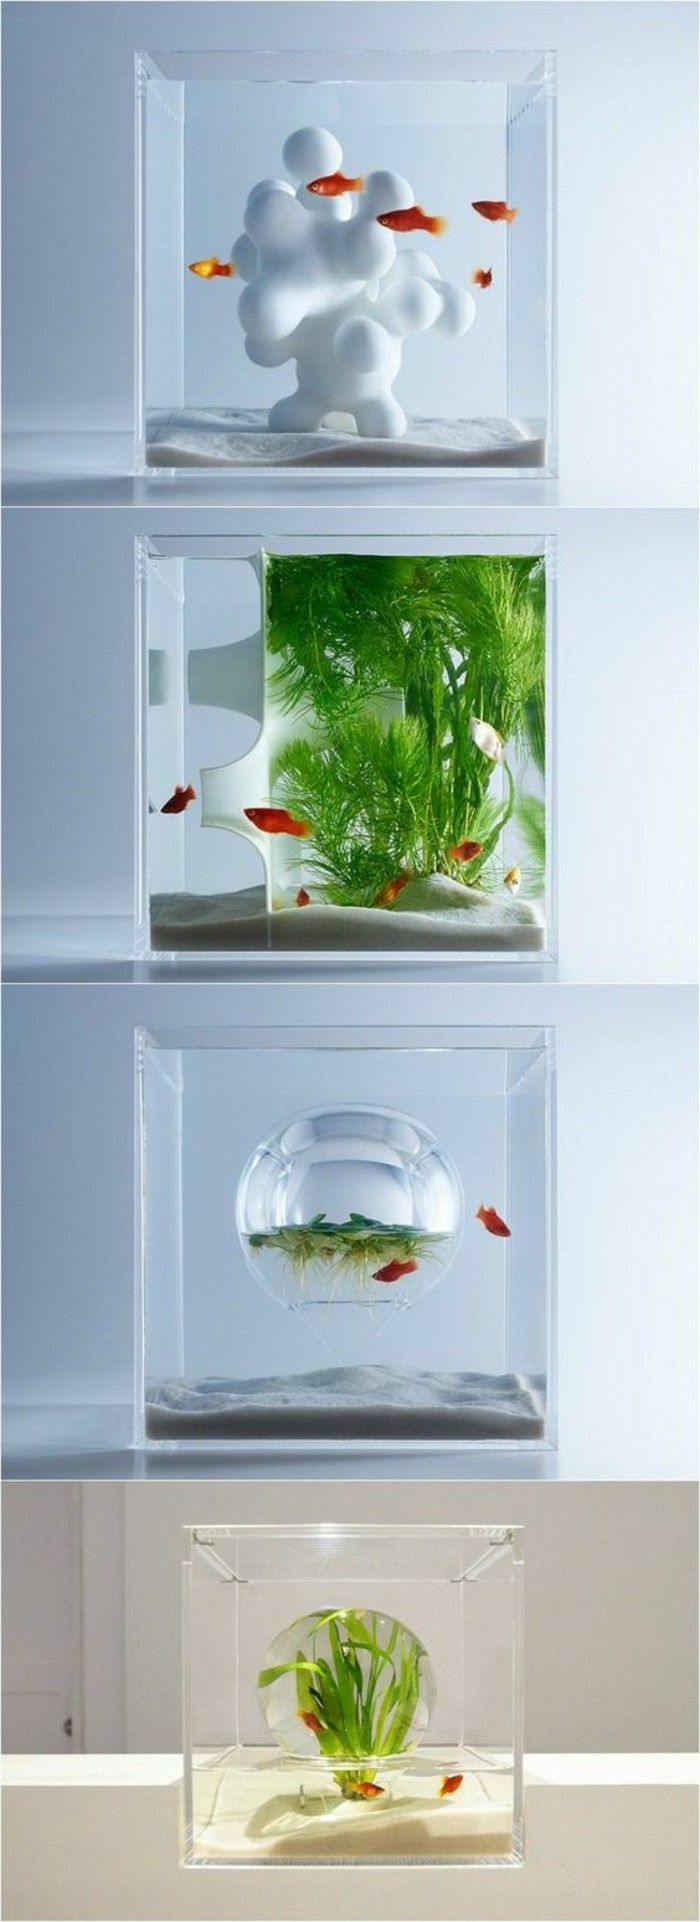 aquarium-deko-aquarium-fur-goldfische-einrichten-sand-wasserpflanzen-kleines-aquarium-aquarium-einrichtung